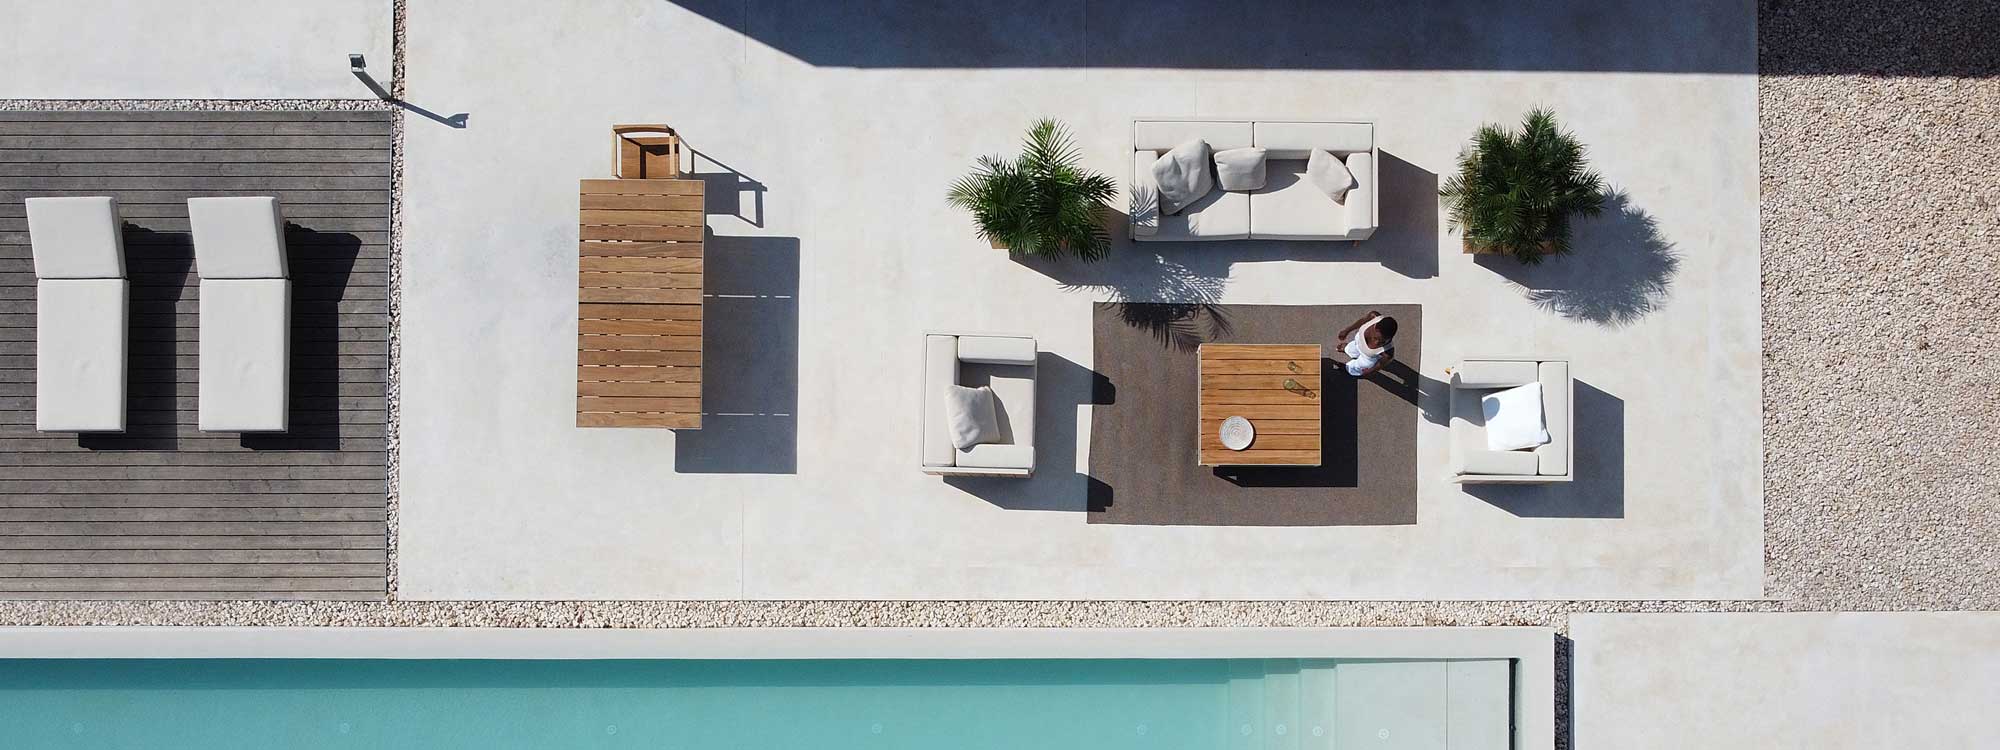 Image of bird's eye view of Vondom Vineyard modern garden furniture on sunny poolside